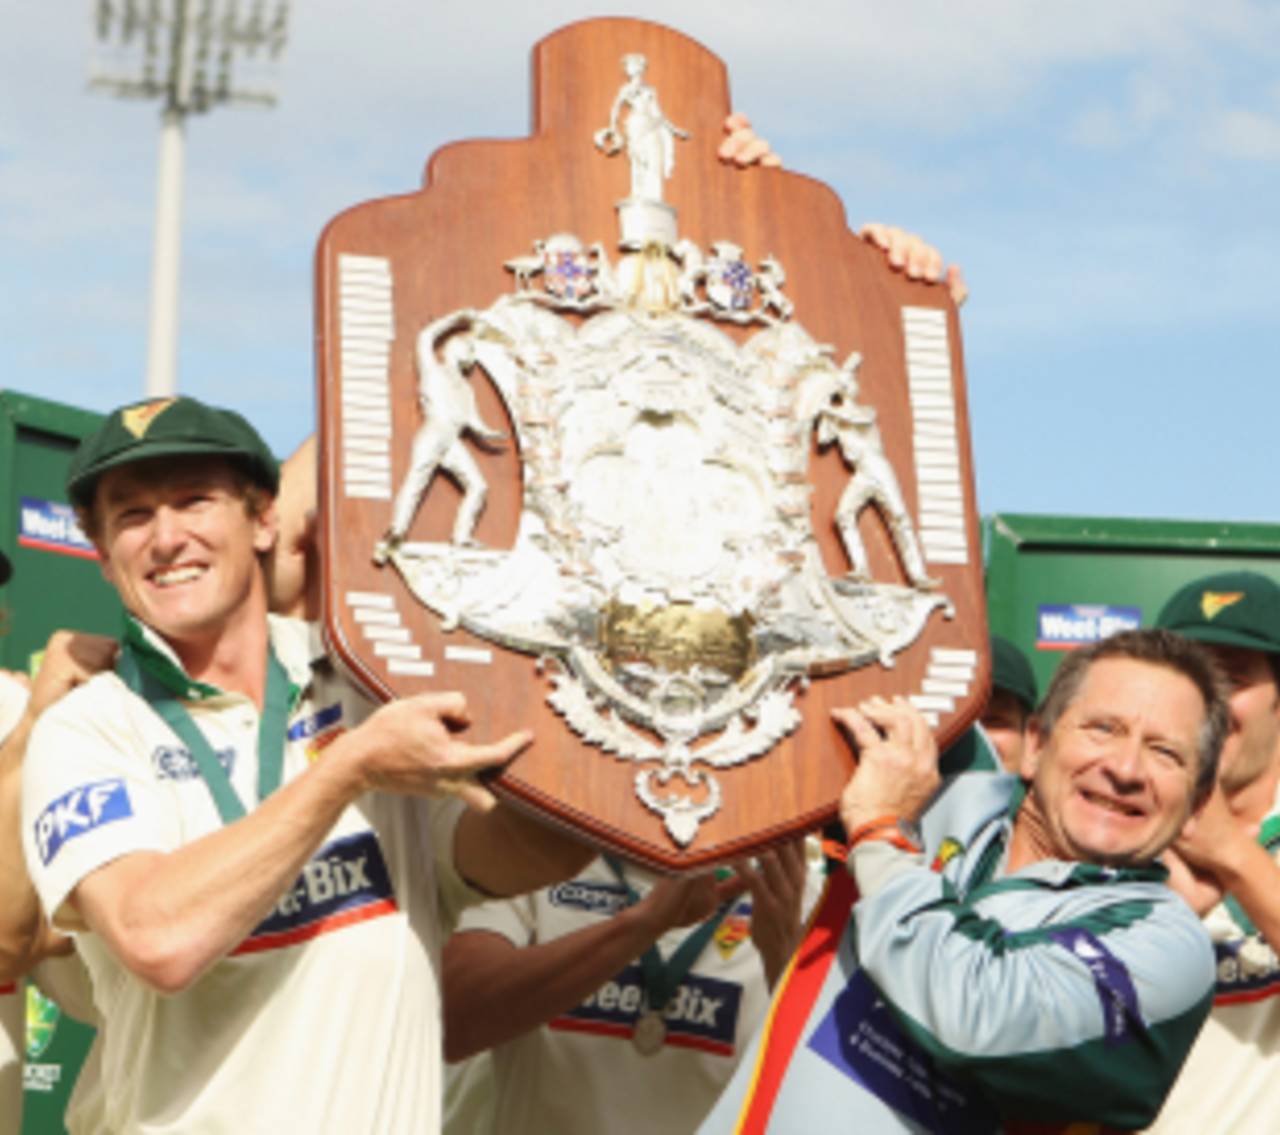 Tim Coyle (right) coached Tasmania through a successful seven-year era&nbsp;&nbsp;&bull;&nbsp;&nbsp;Getty Images